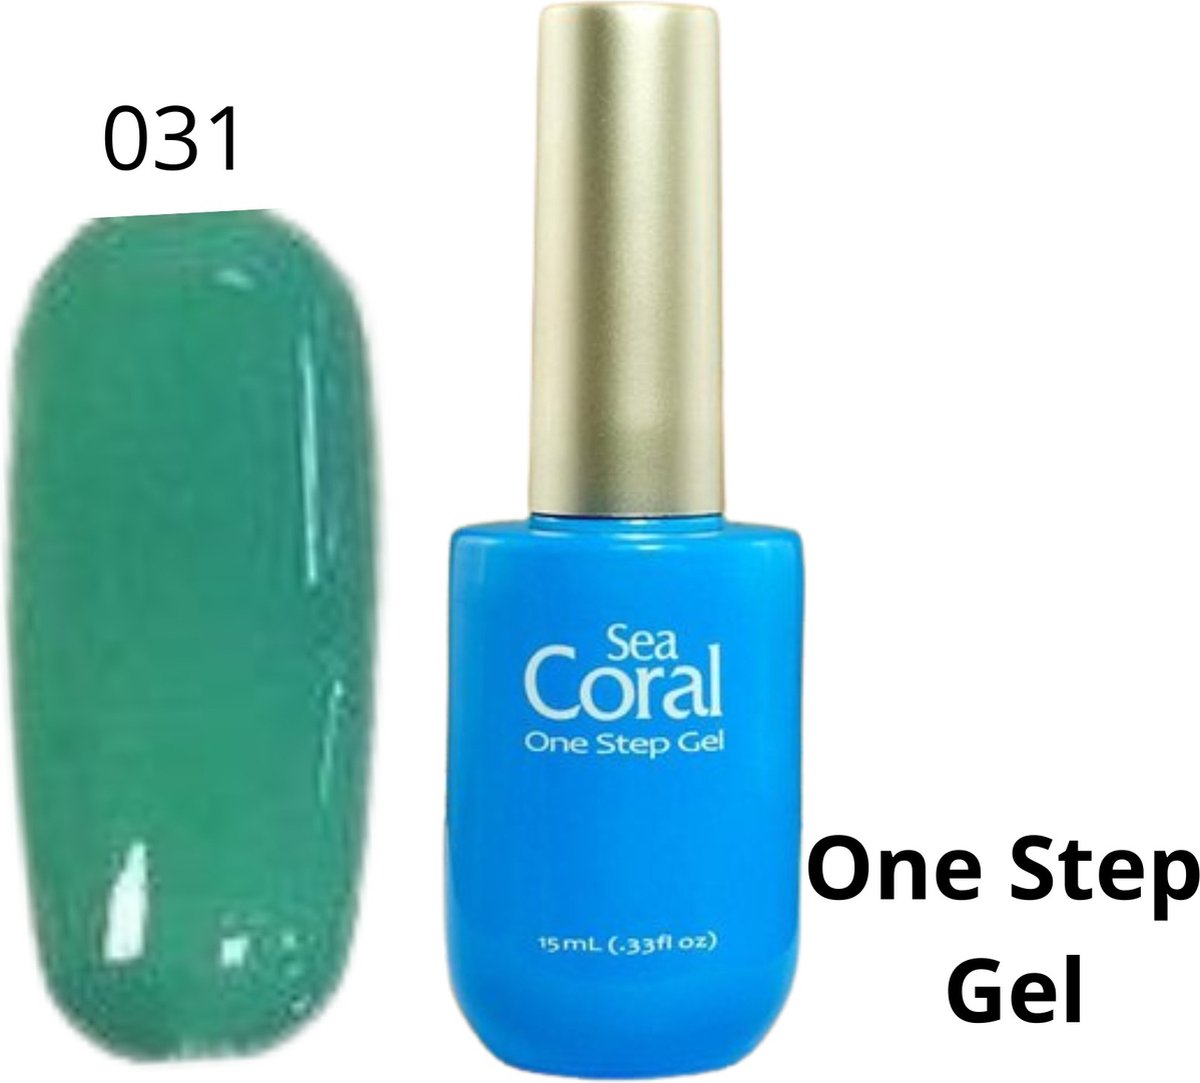 SeaCoral One Step No Wipe Gellak - Gel Nagellak - GelPolish – geen plaklaag - zónder kleeflaag, geschikt voor UV en LED – Groen 031